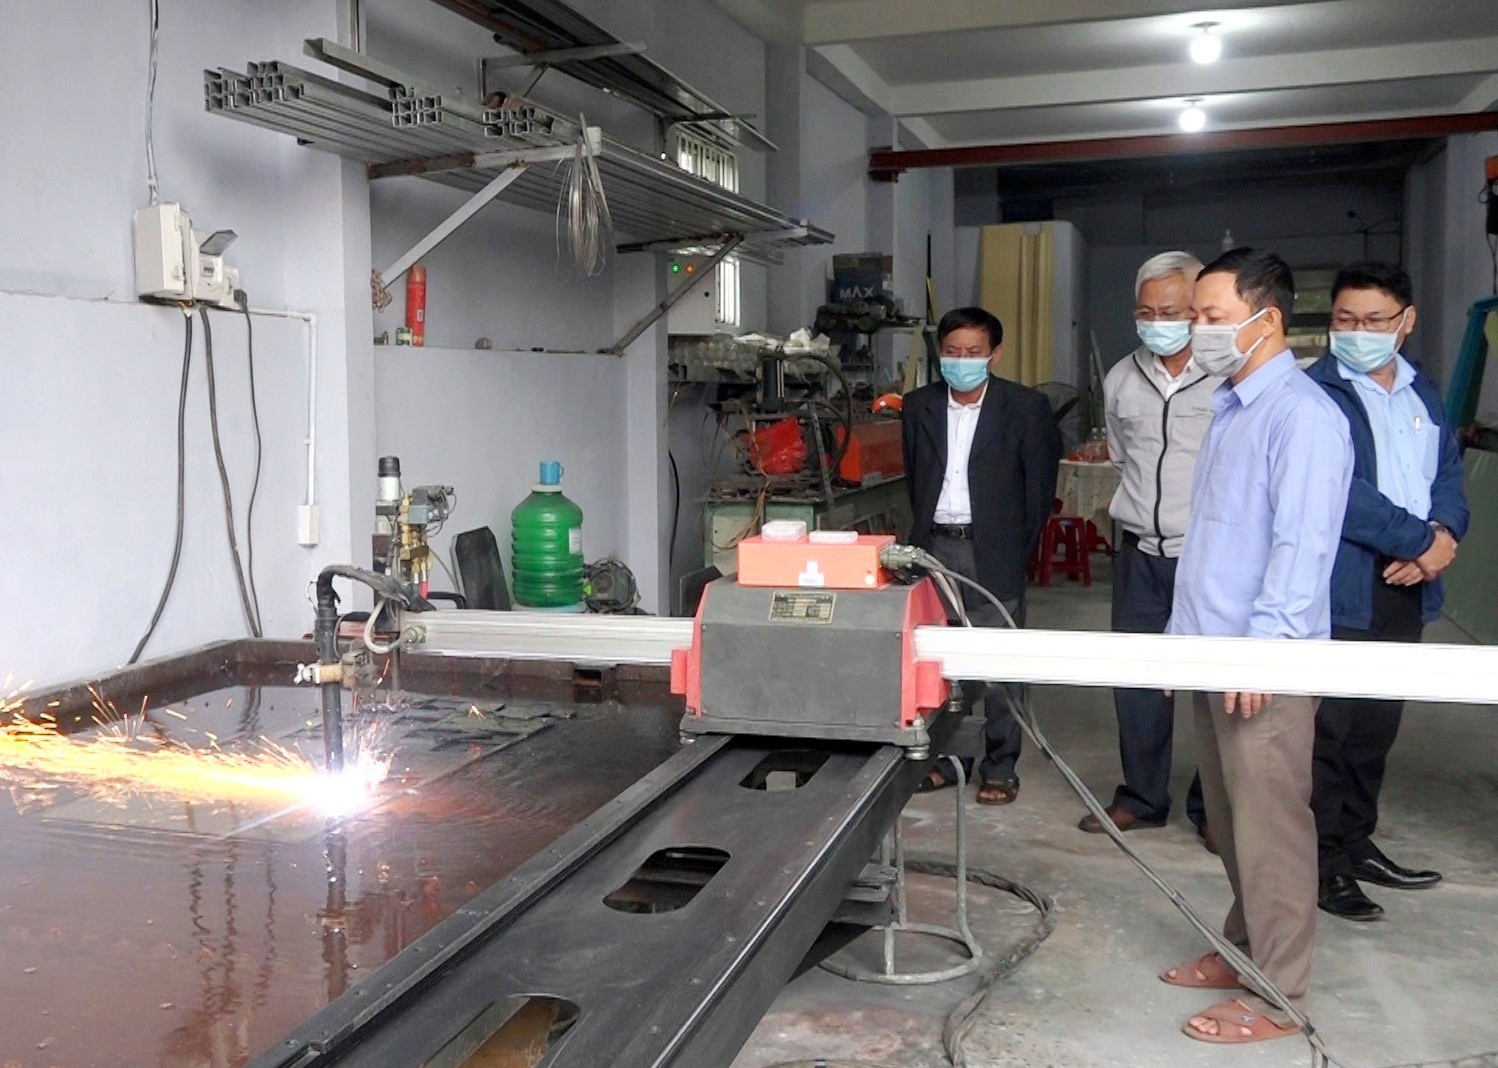 Máy CNC cắt sắt giúp sản xuất các sản phẩm có độ chính xác cao. Ảnh: M.T